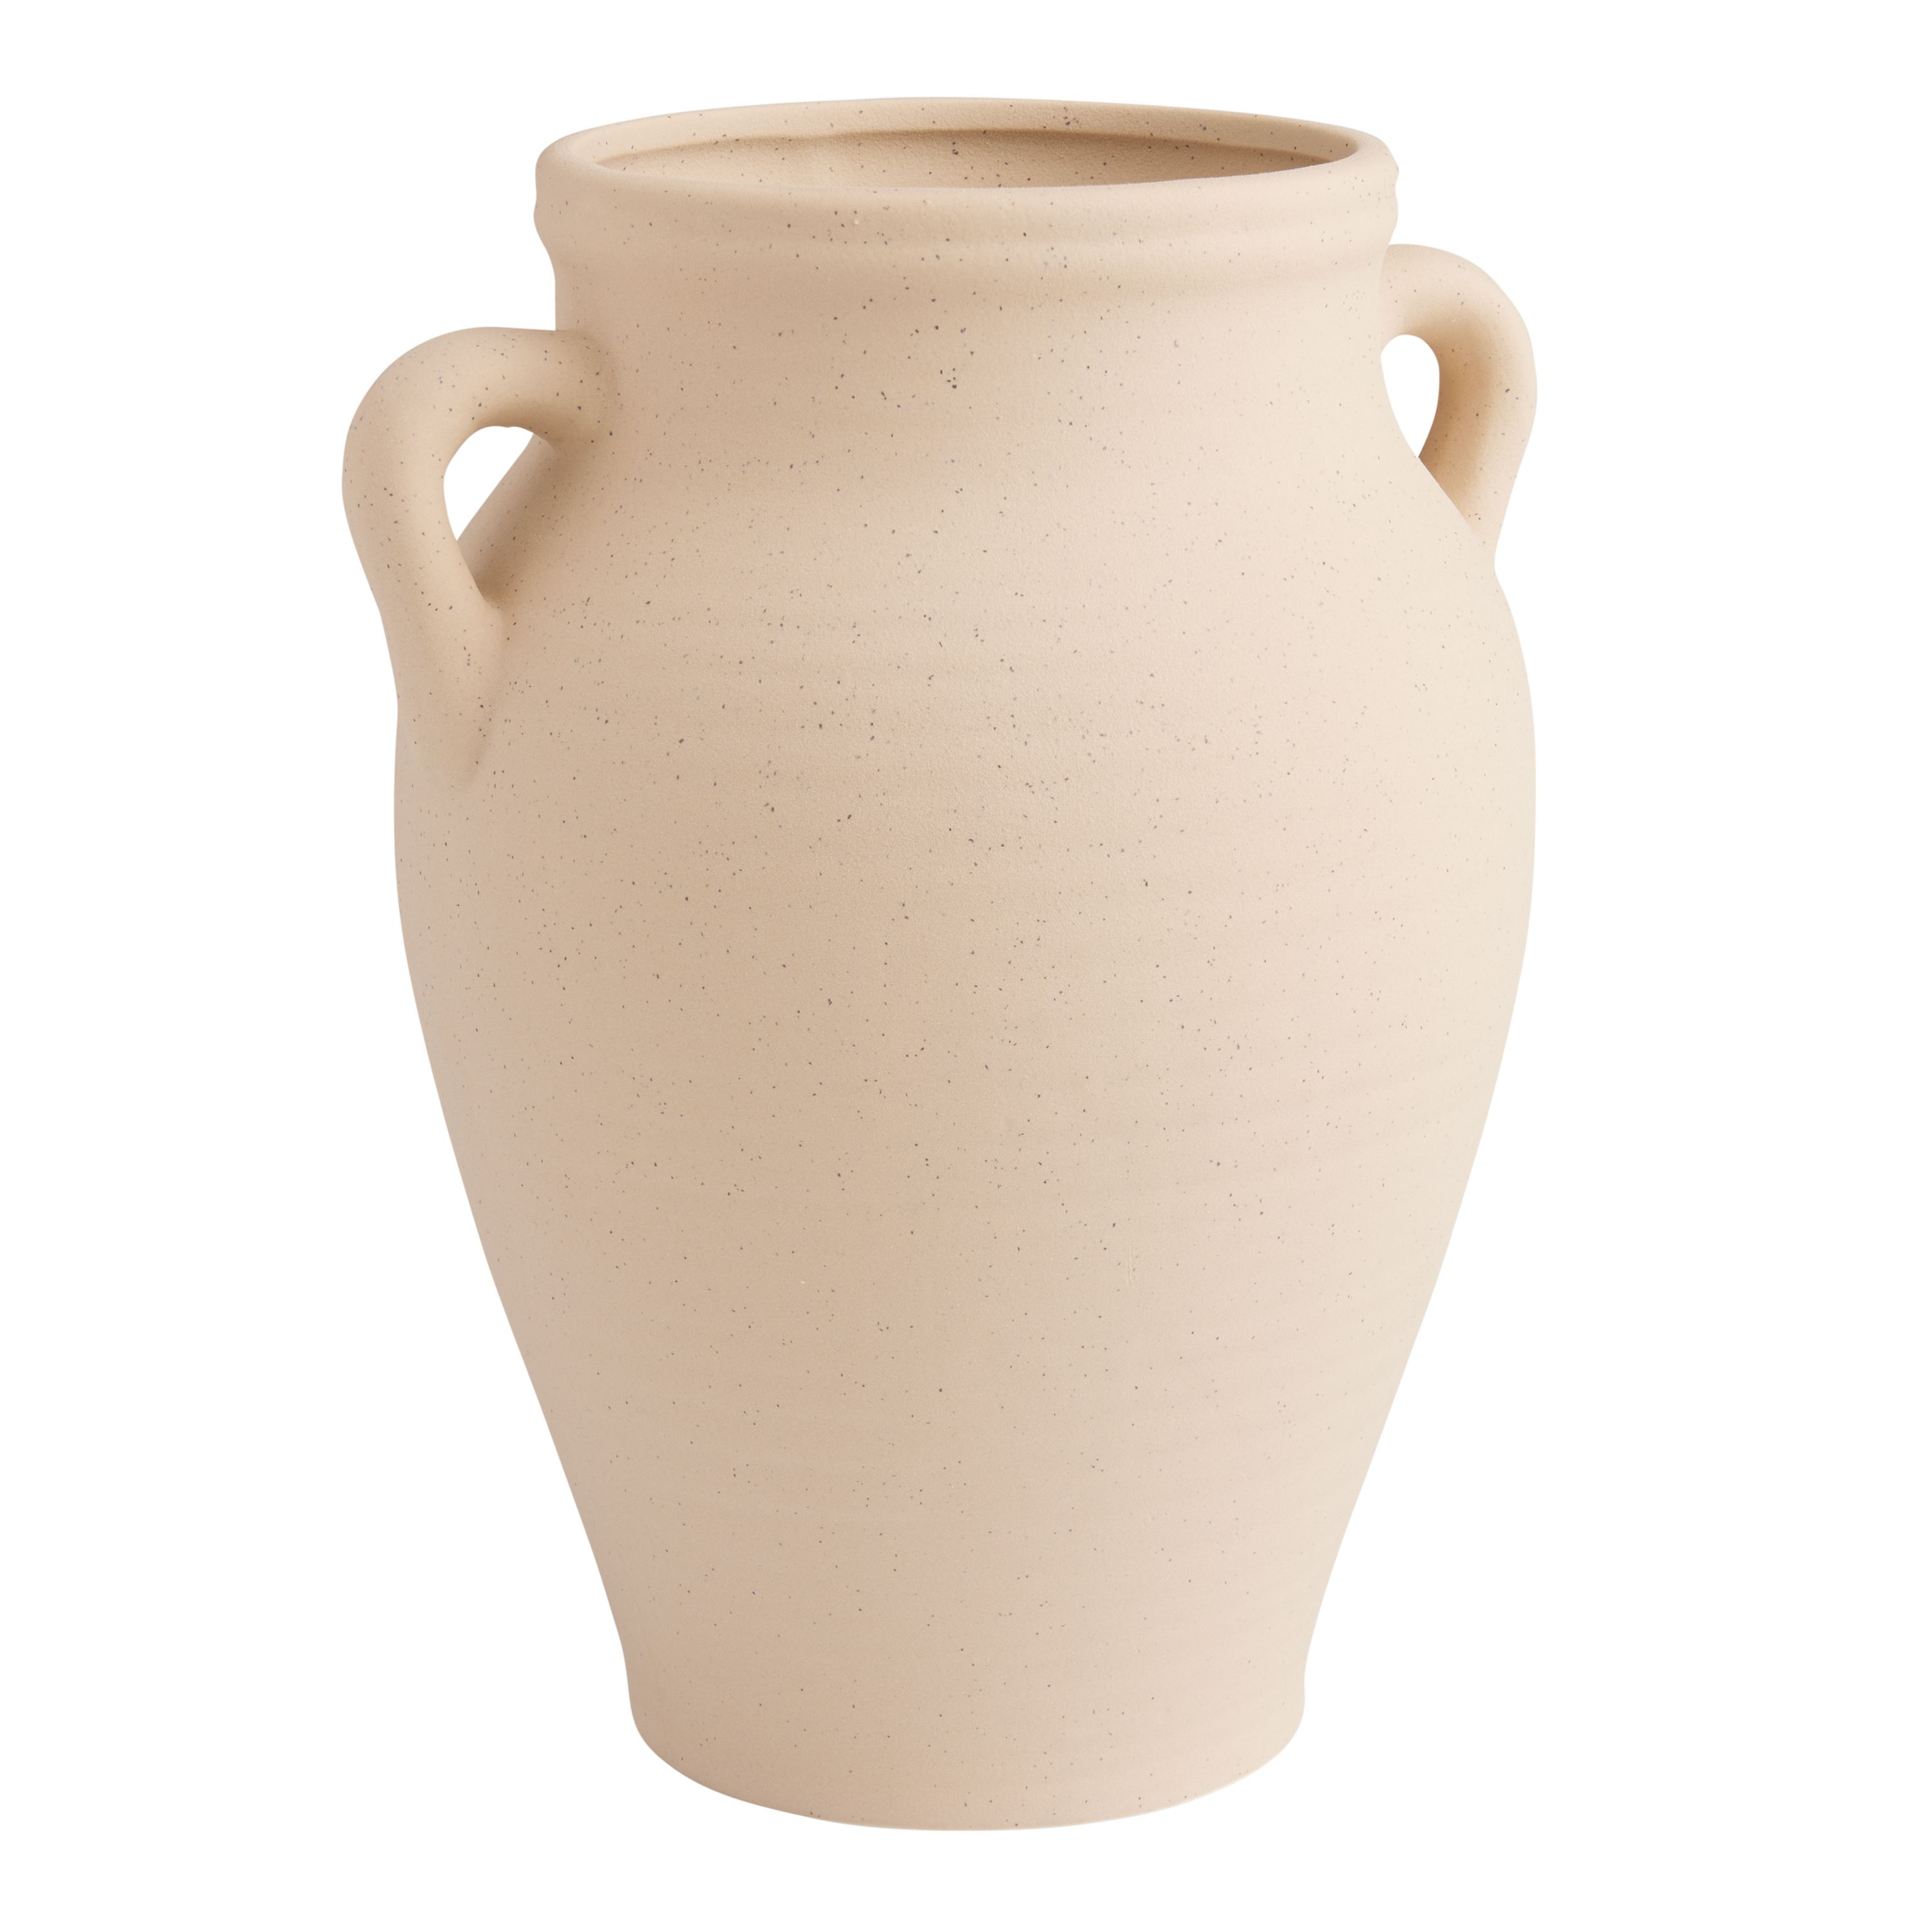 Natural Ceramic Speckled Jug Vase With Handles | World Market